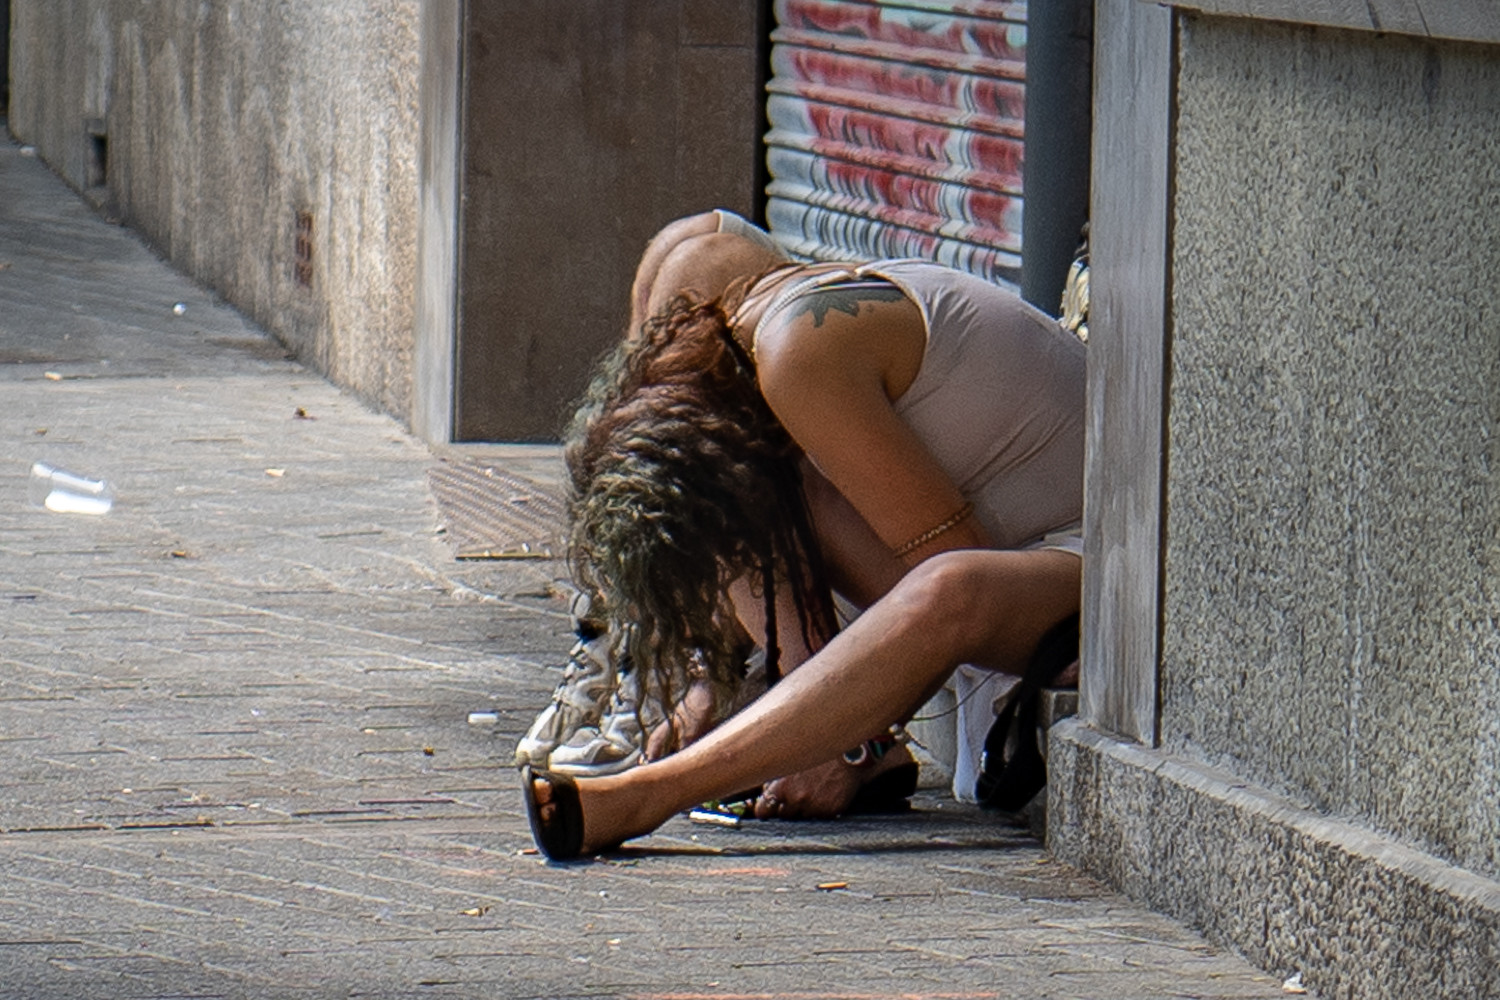 Una mujer consume heroína frente a la sala de venopunción de Drassanes  / LUIS MIGUEL AÑÓN (CG)